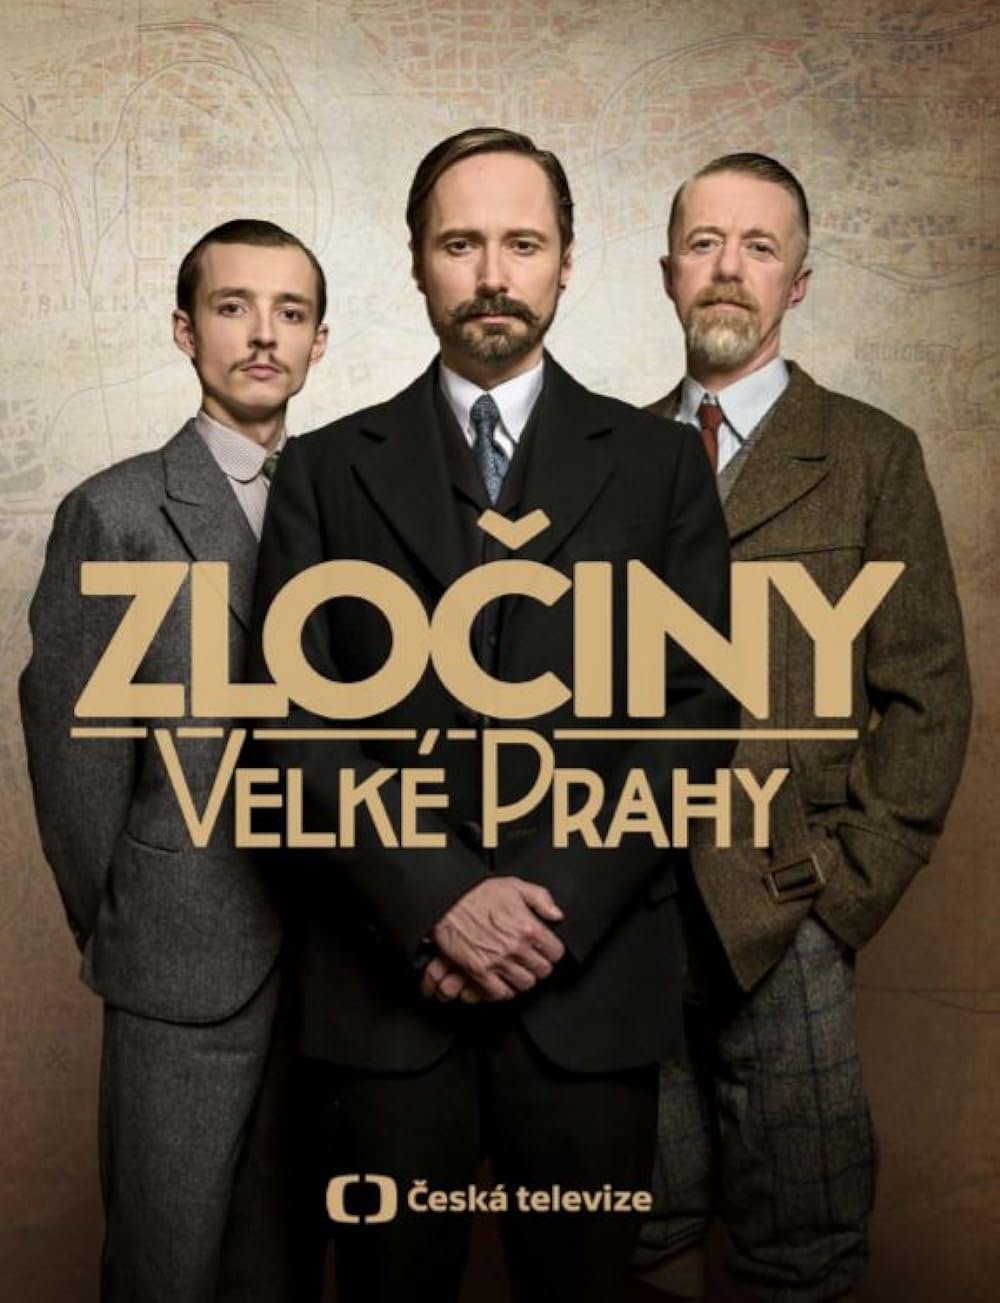 постер Zlociny Velke Prahy